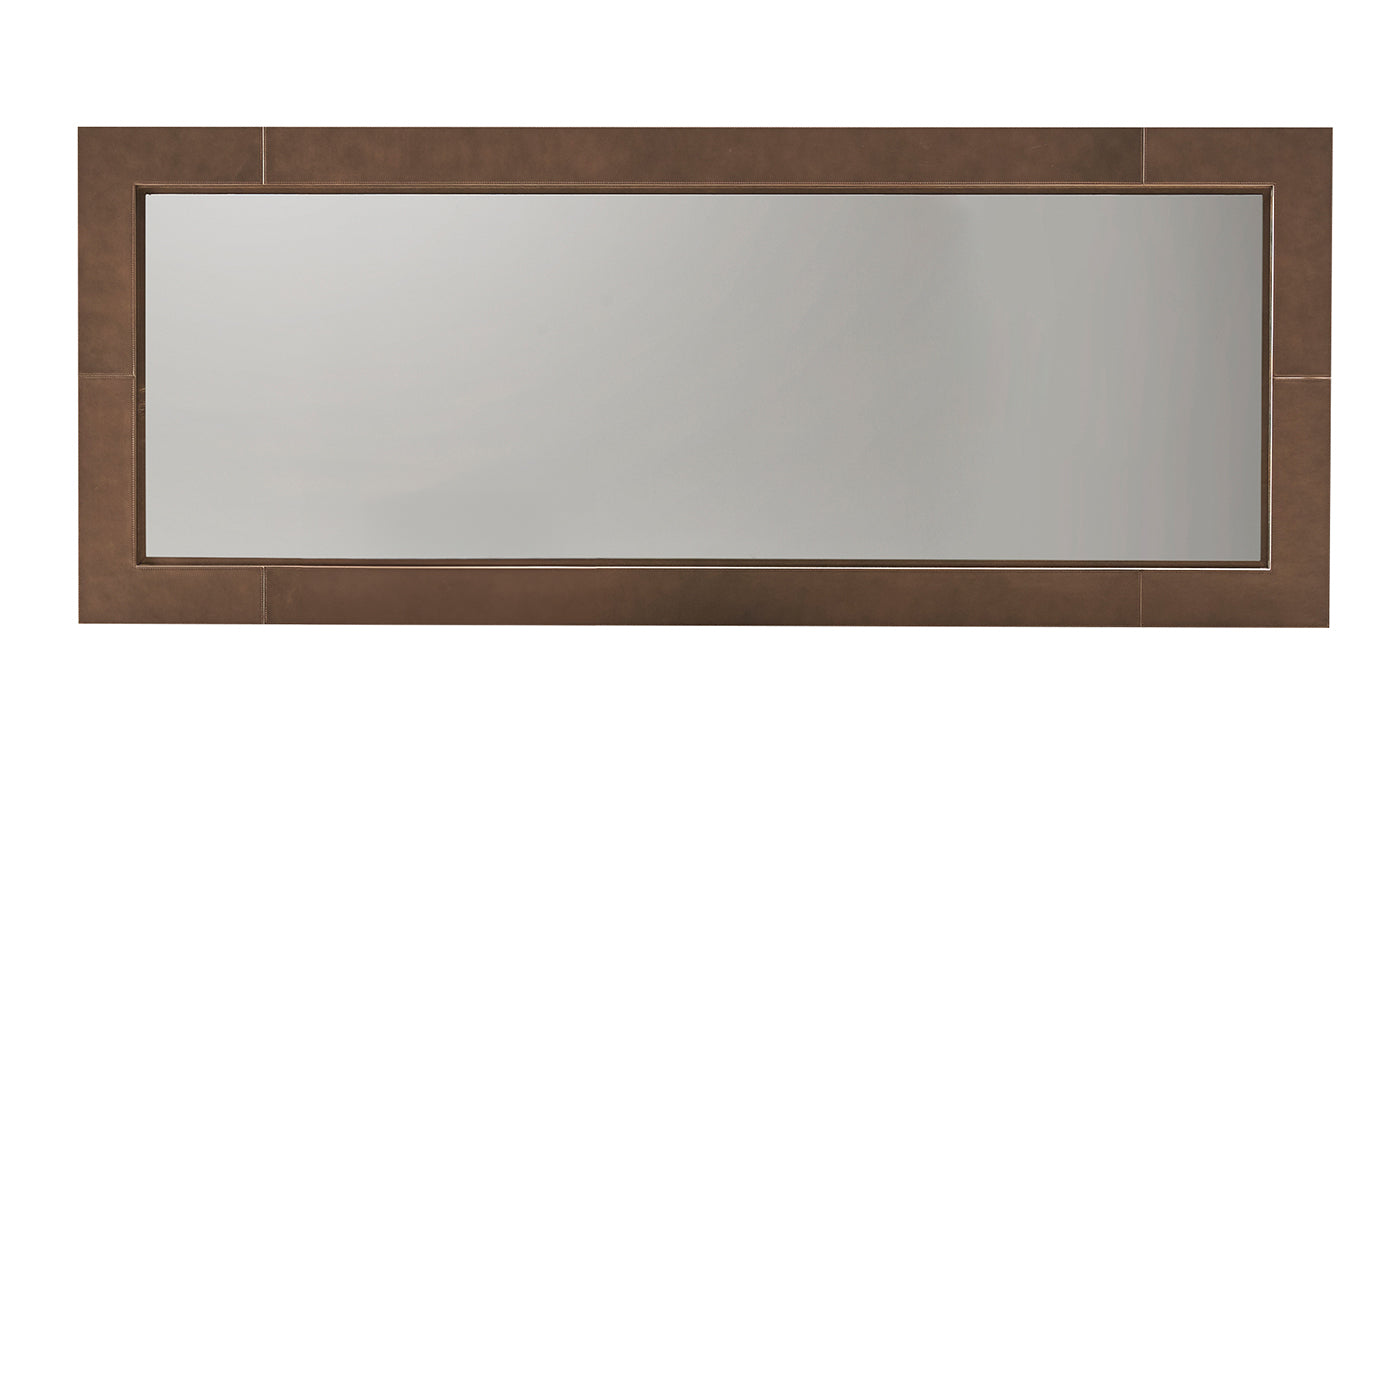 Volterra Rectangular Brown Leather Mirror - Main view